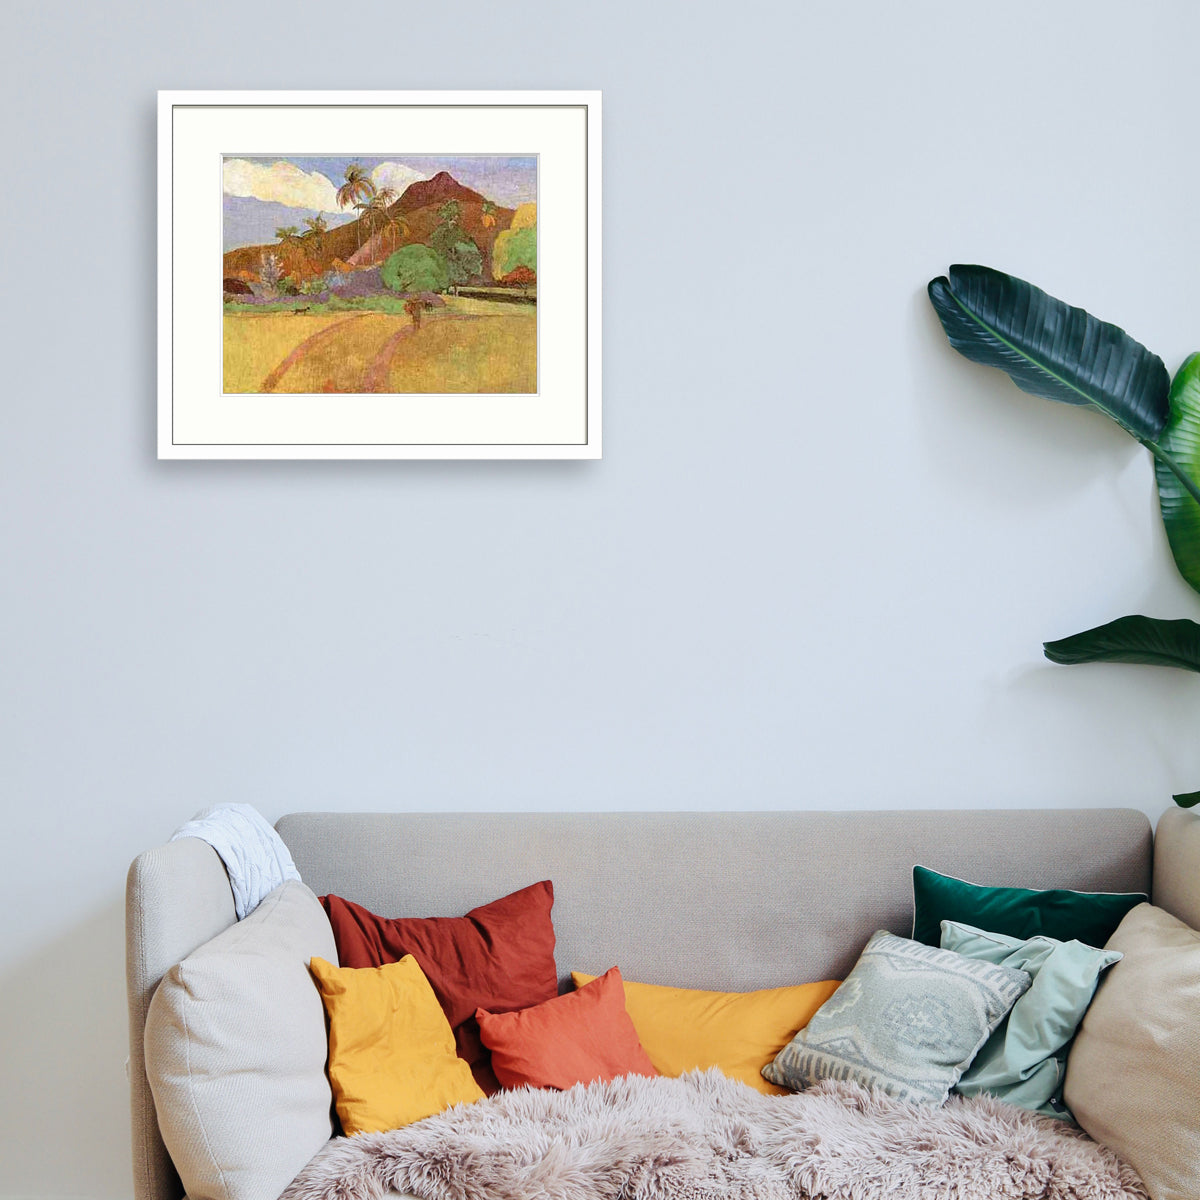 Gauguin - Paysage tahitien Le Cadre Décoration intérieure Tableaux cadre bois affiche poster oeuvre d'art rapport qualité prix pas cher peintre célèbre